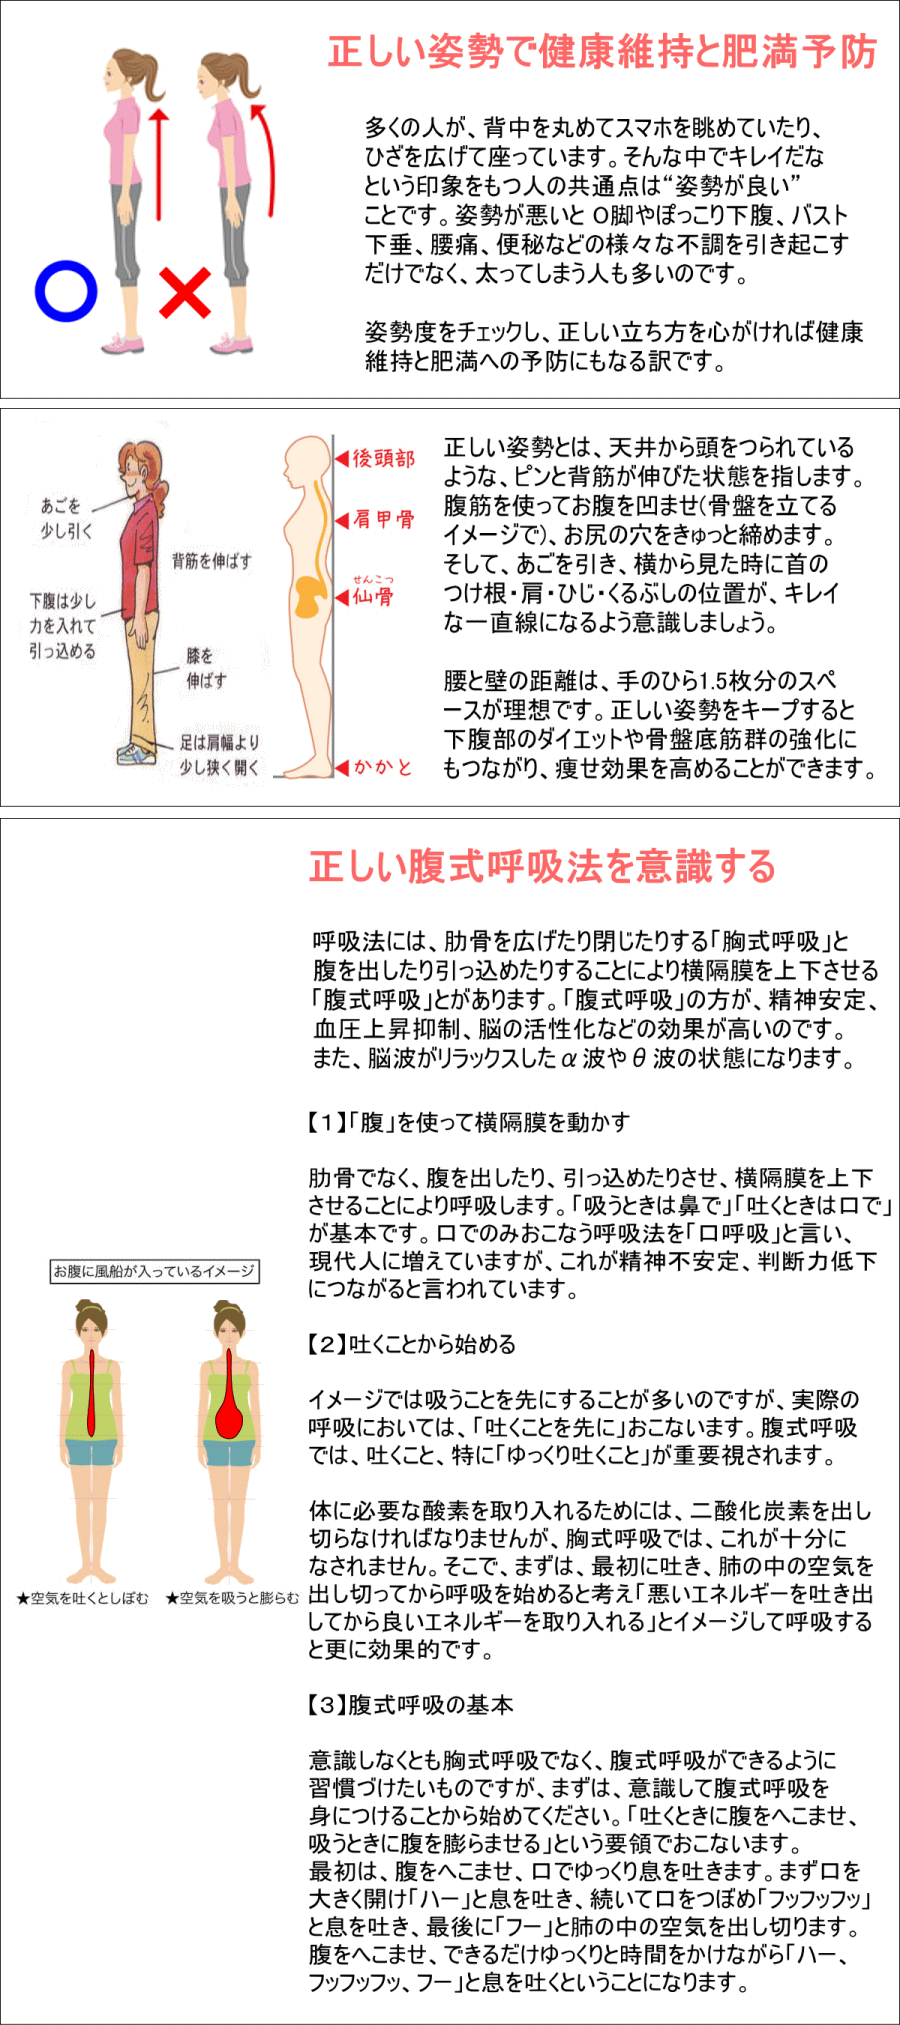 正しい姿勢と正しい呼吸は健康の基本です 一般社団法人日本吹矢レクリエーション協会